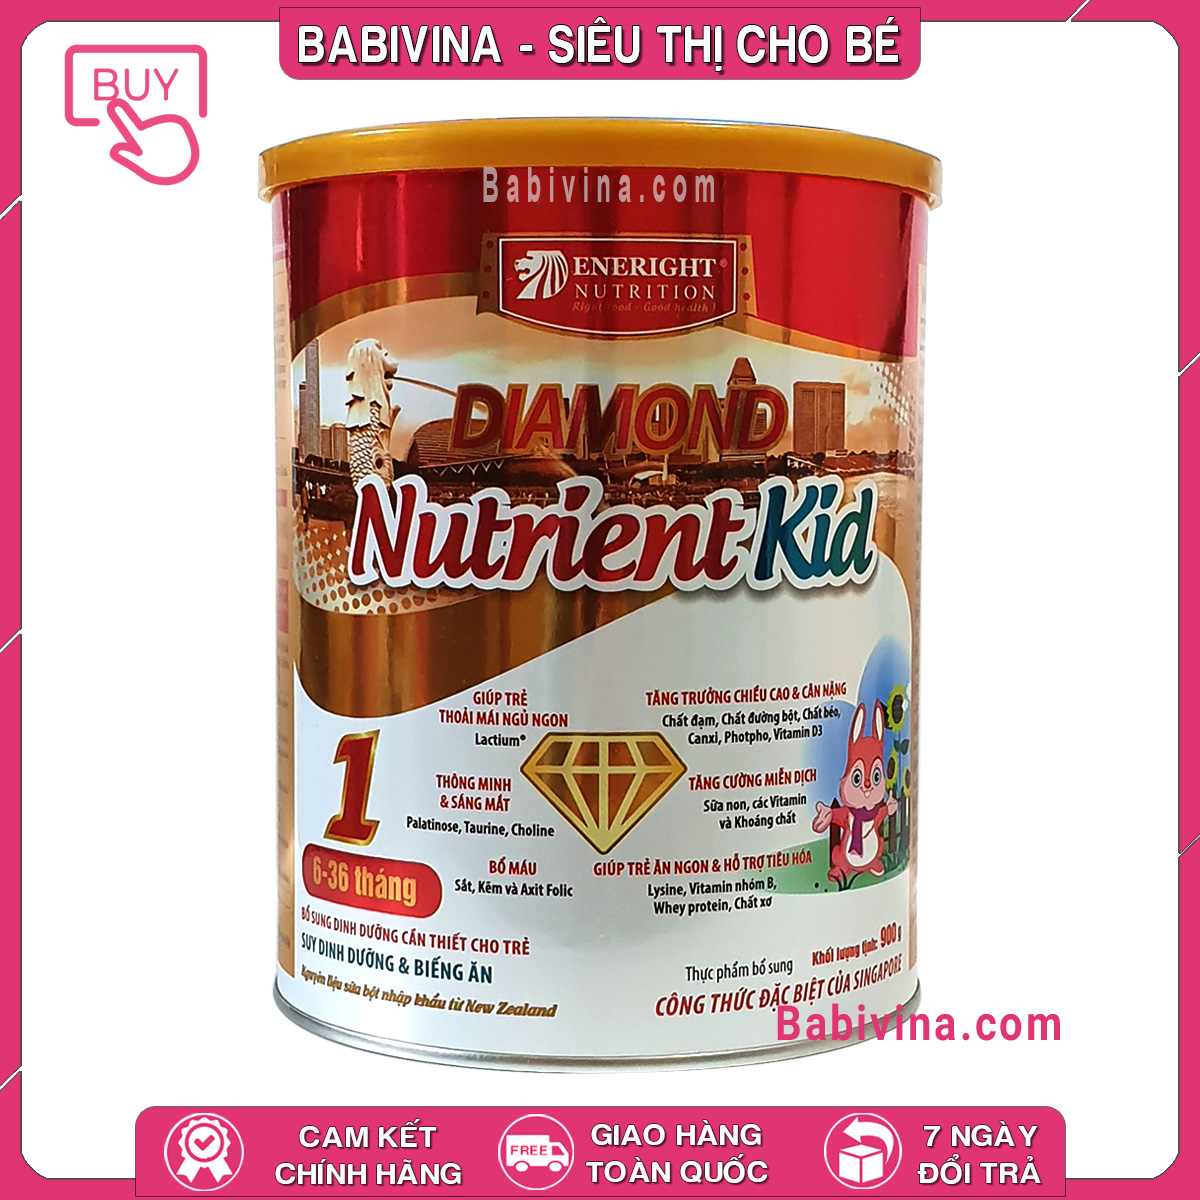 Sữa Diamond Nutrient Kid 1 900g Trẻ 6-36 Tháng Tuổi, Biếng Ăn, Chậm Lớn